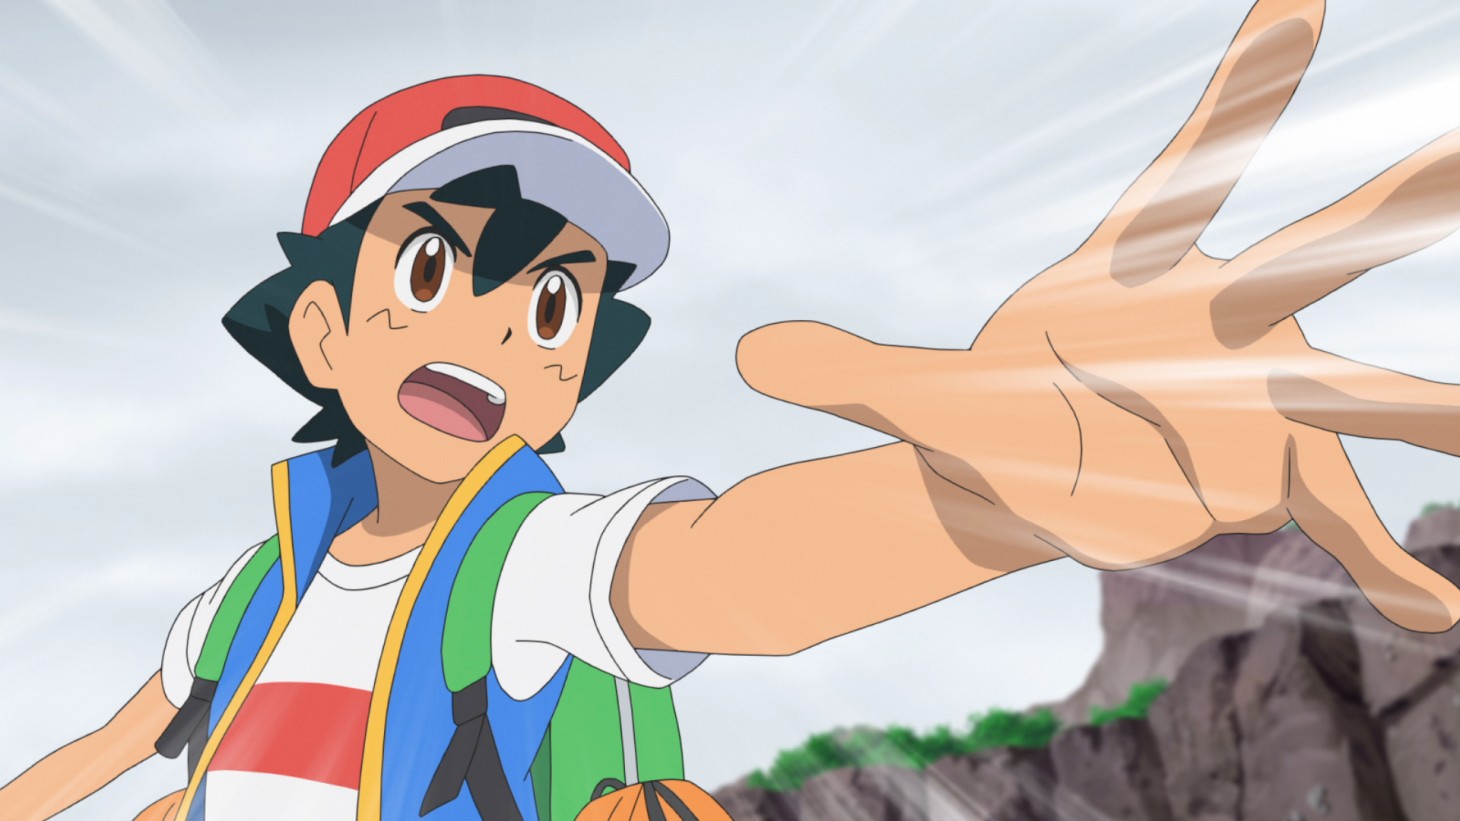 15 Best Pokémon Episodes That Track Ash Ketchum's Journey